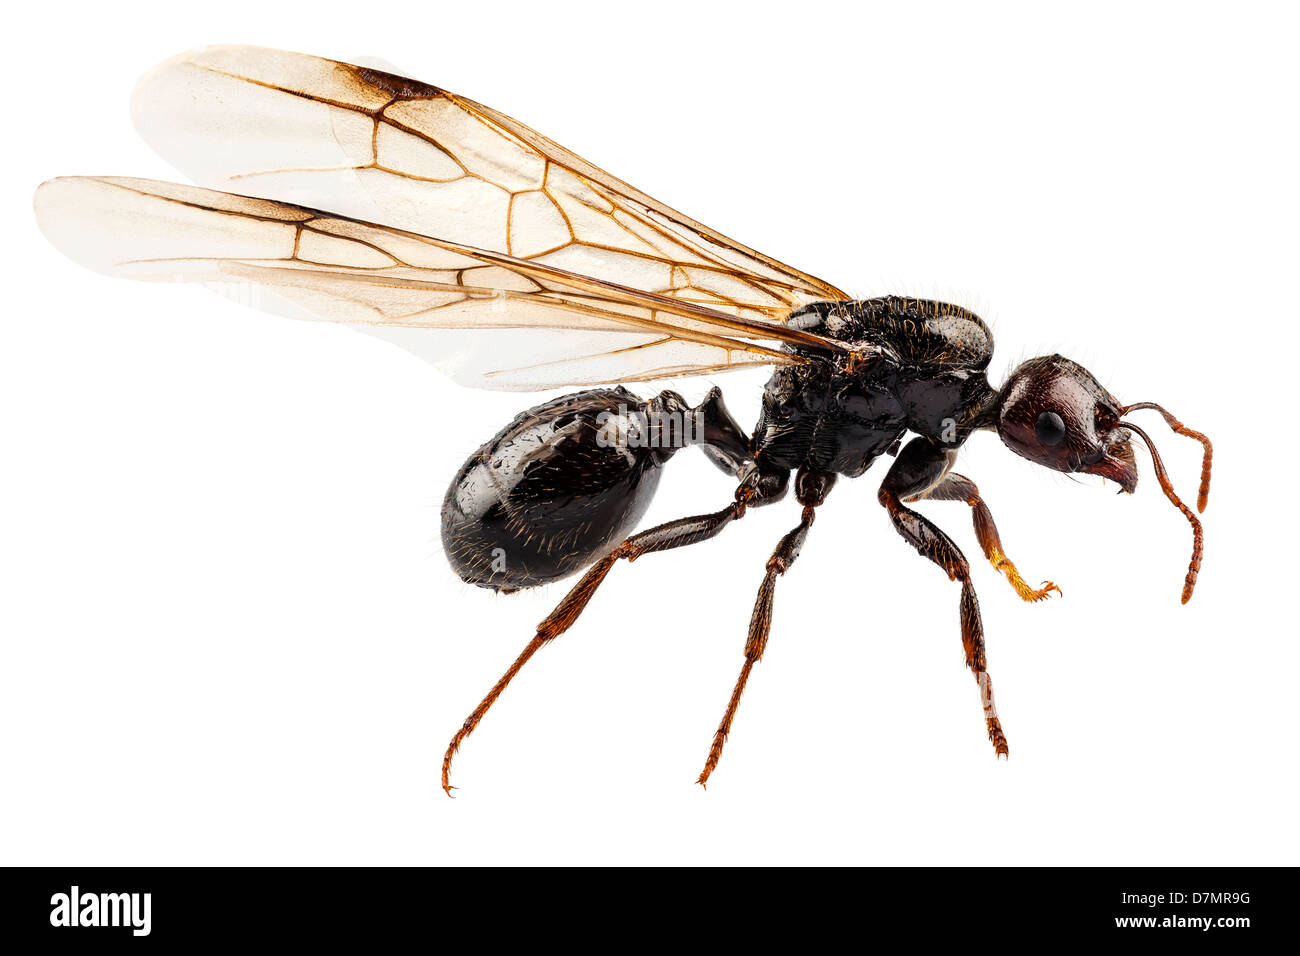 Jardin à ailes noires les espèces de fourmis Lasius niger Banque D'Images